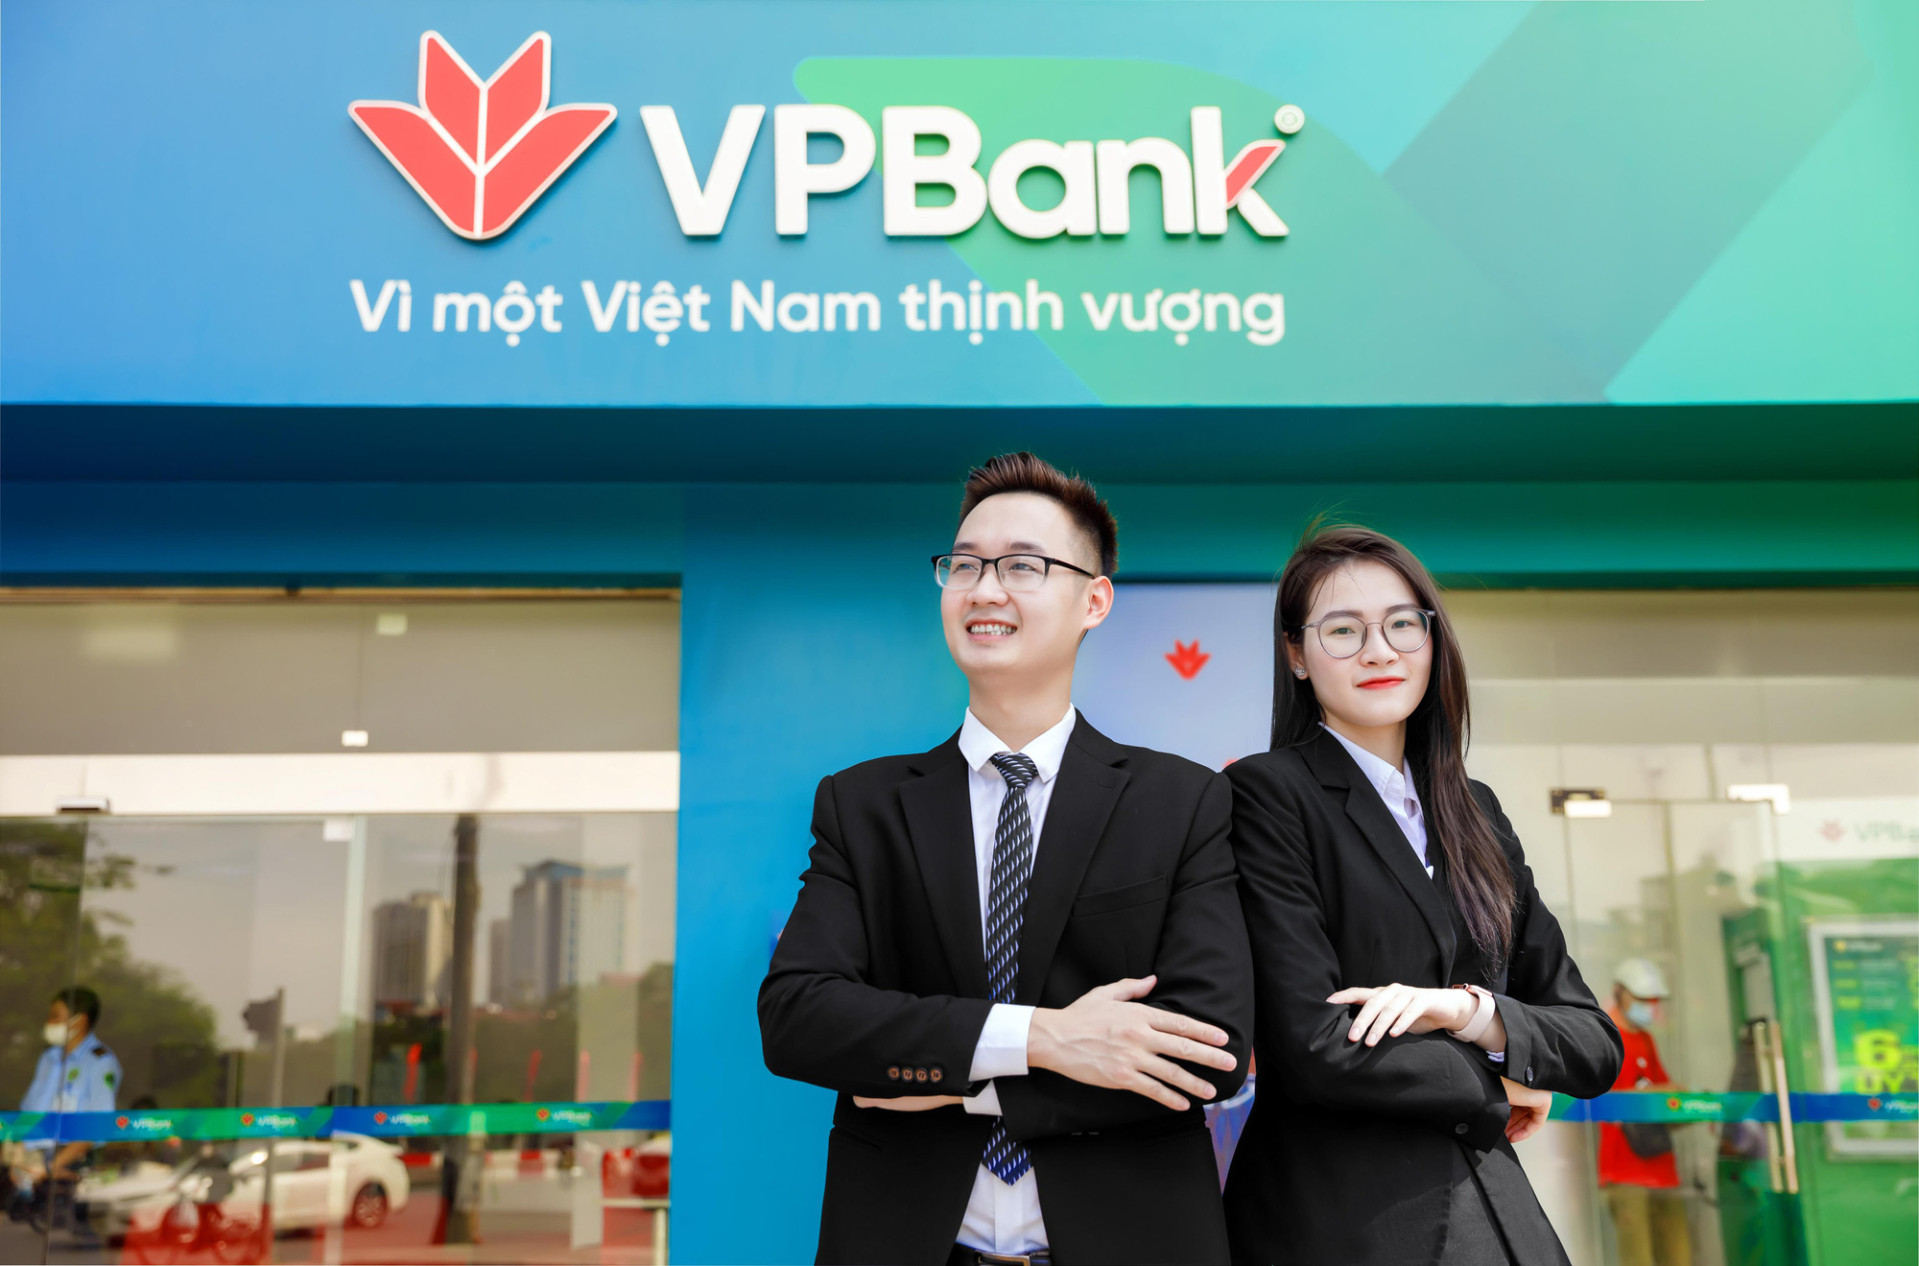 TMCP Việt Nam Thịnh Vượng (VPBank) lên kế hoạch lợi nhuận gần 30.000 tỷ đồng cao hơn gấp đôi mức thực hiện trong năm 2021.